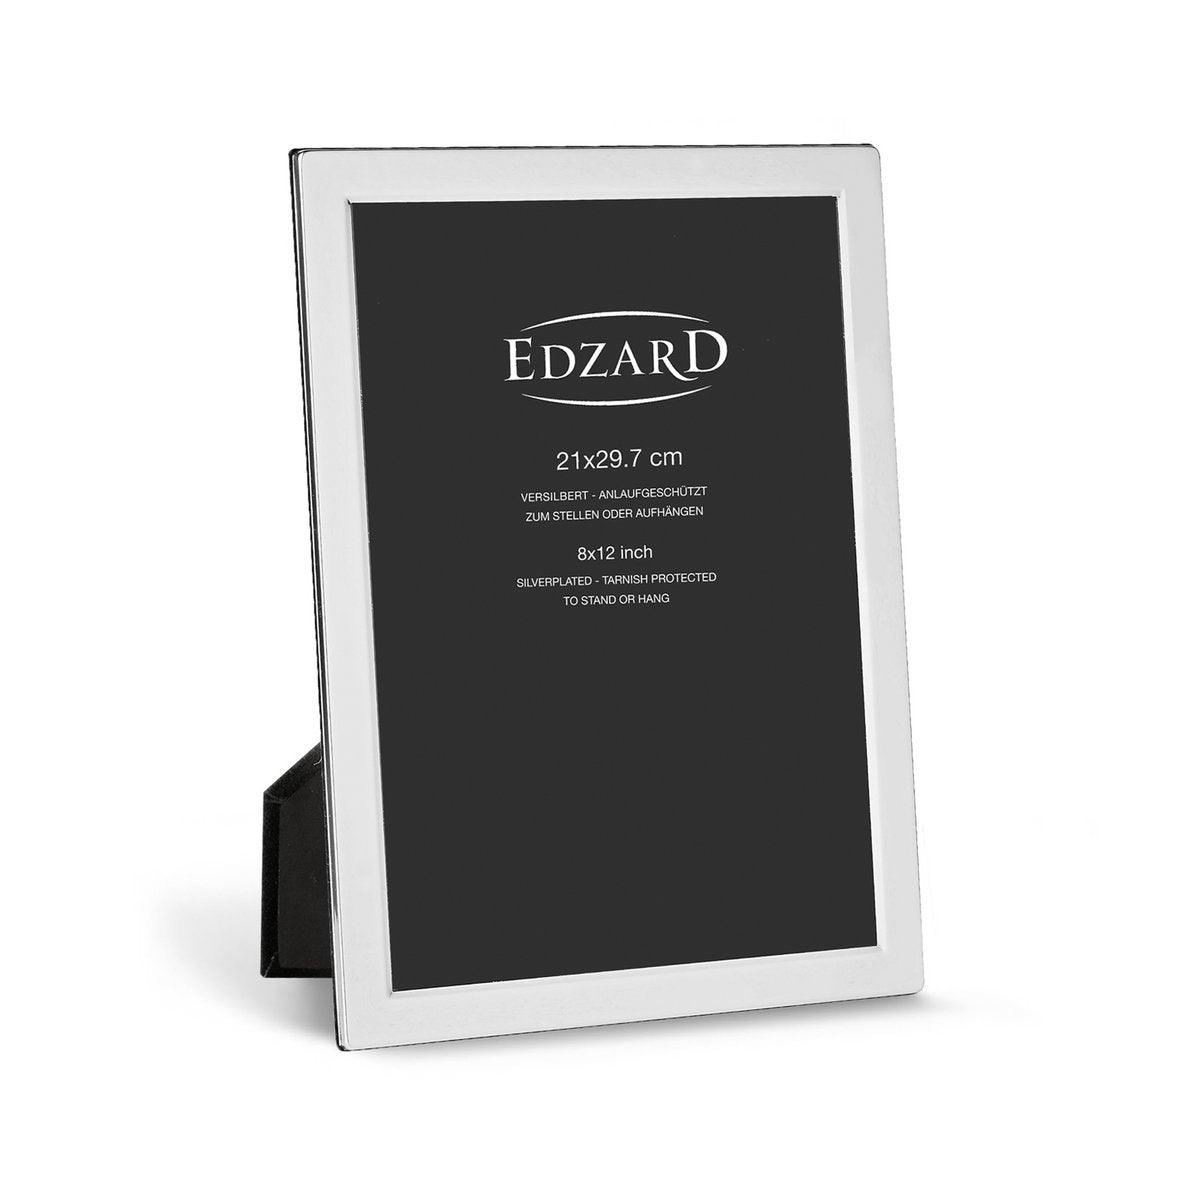 EDZARD Fotorahmen Salerno für Foto (DIN A4 - 21 x 29,7 cm), edel versilbert, anlaufgeschützt, 2 Aufhänger - HomeDesign Knaus